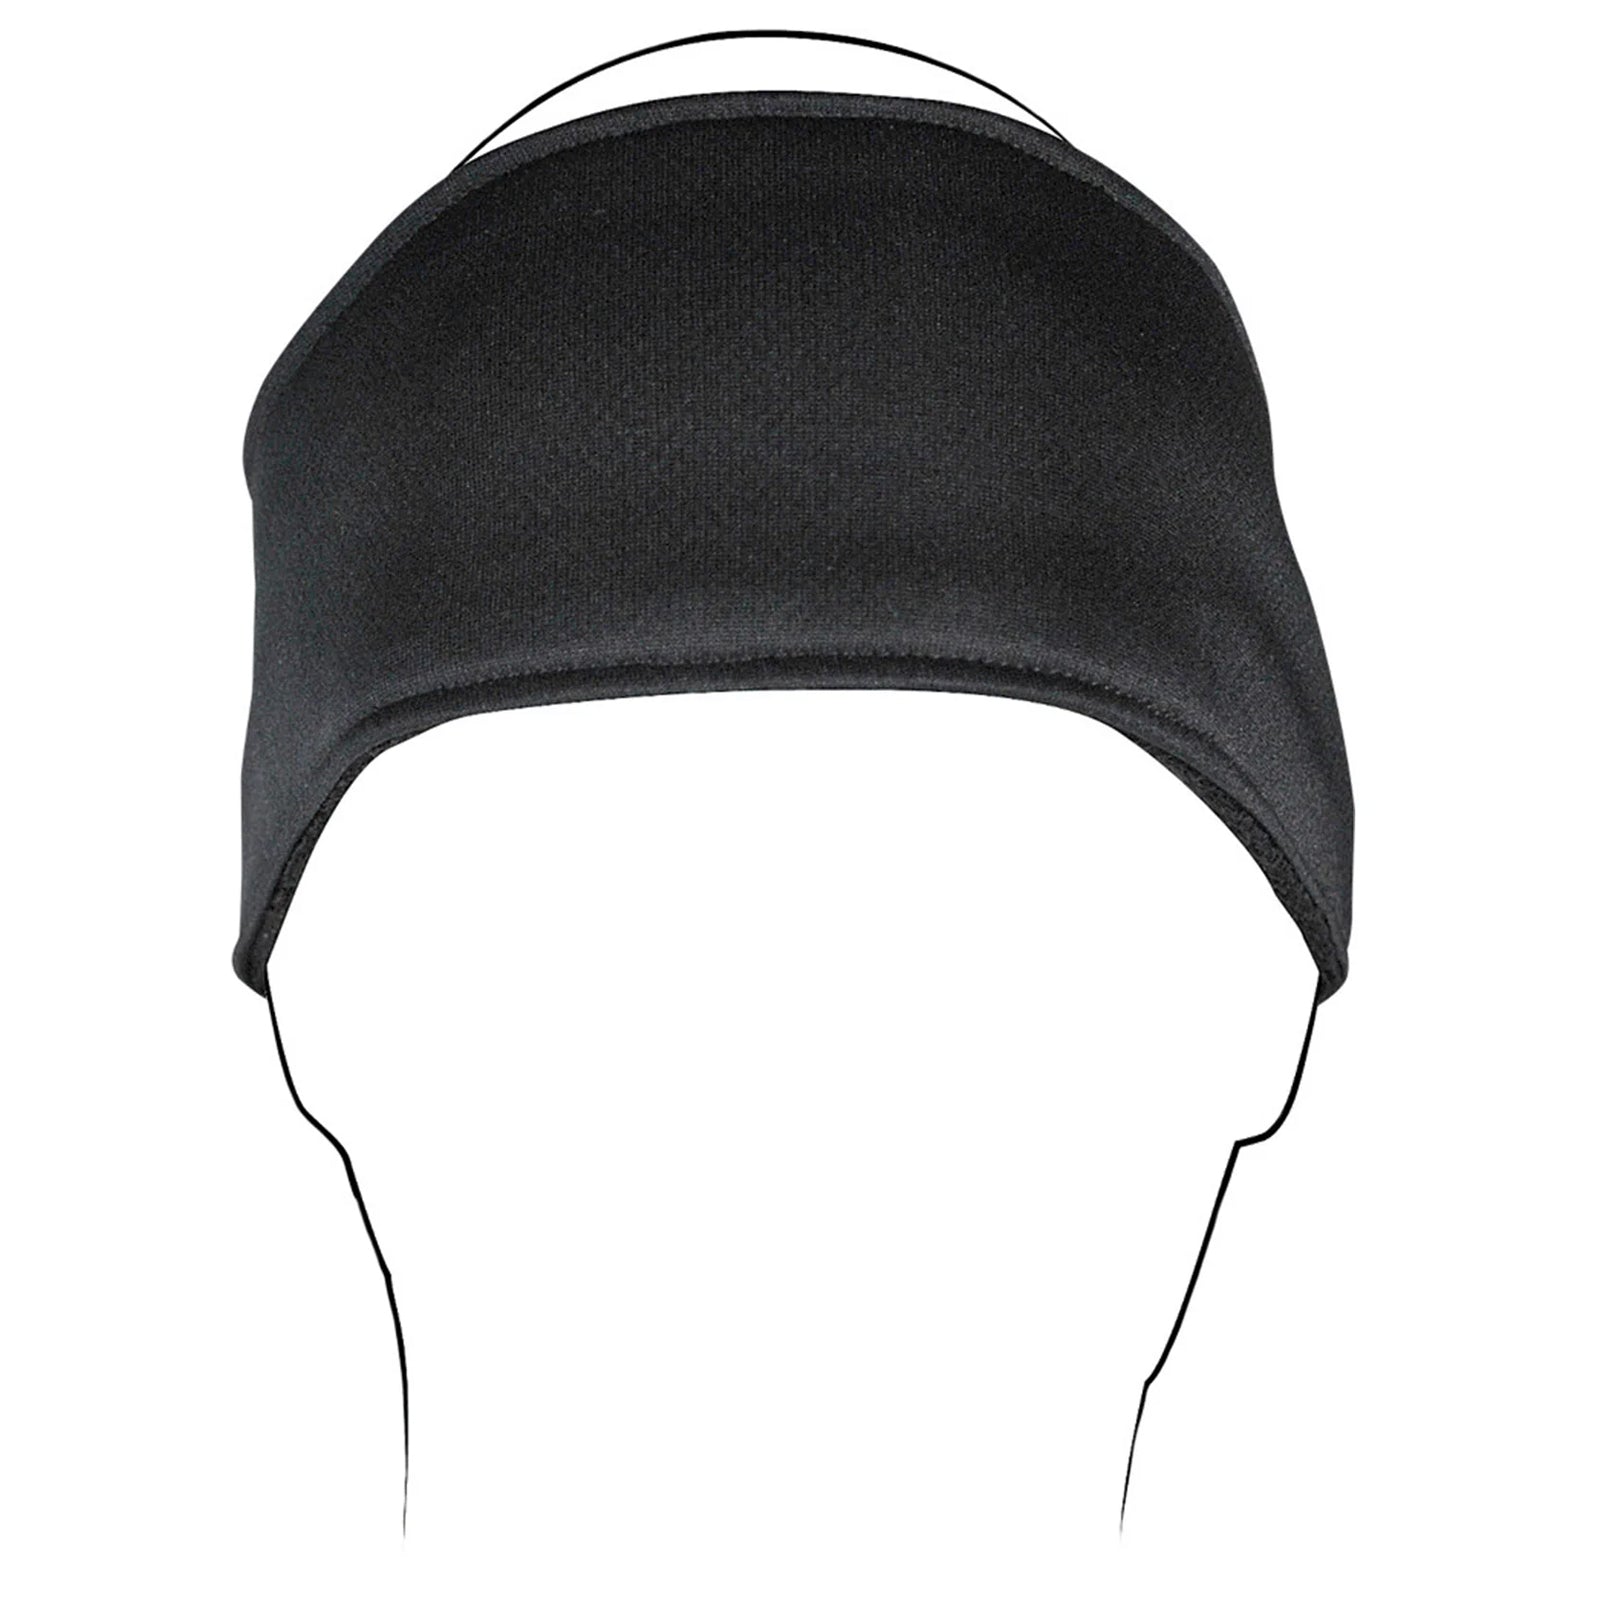 Zan Headgear Headwrap Adult Headwear